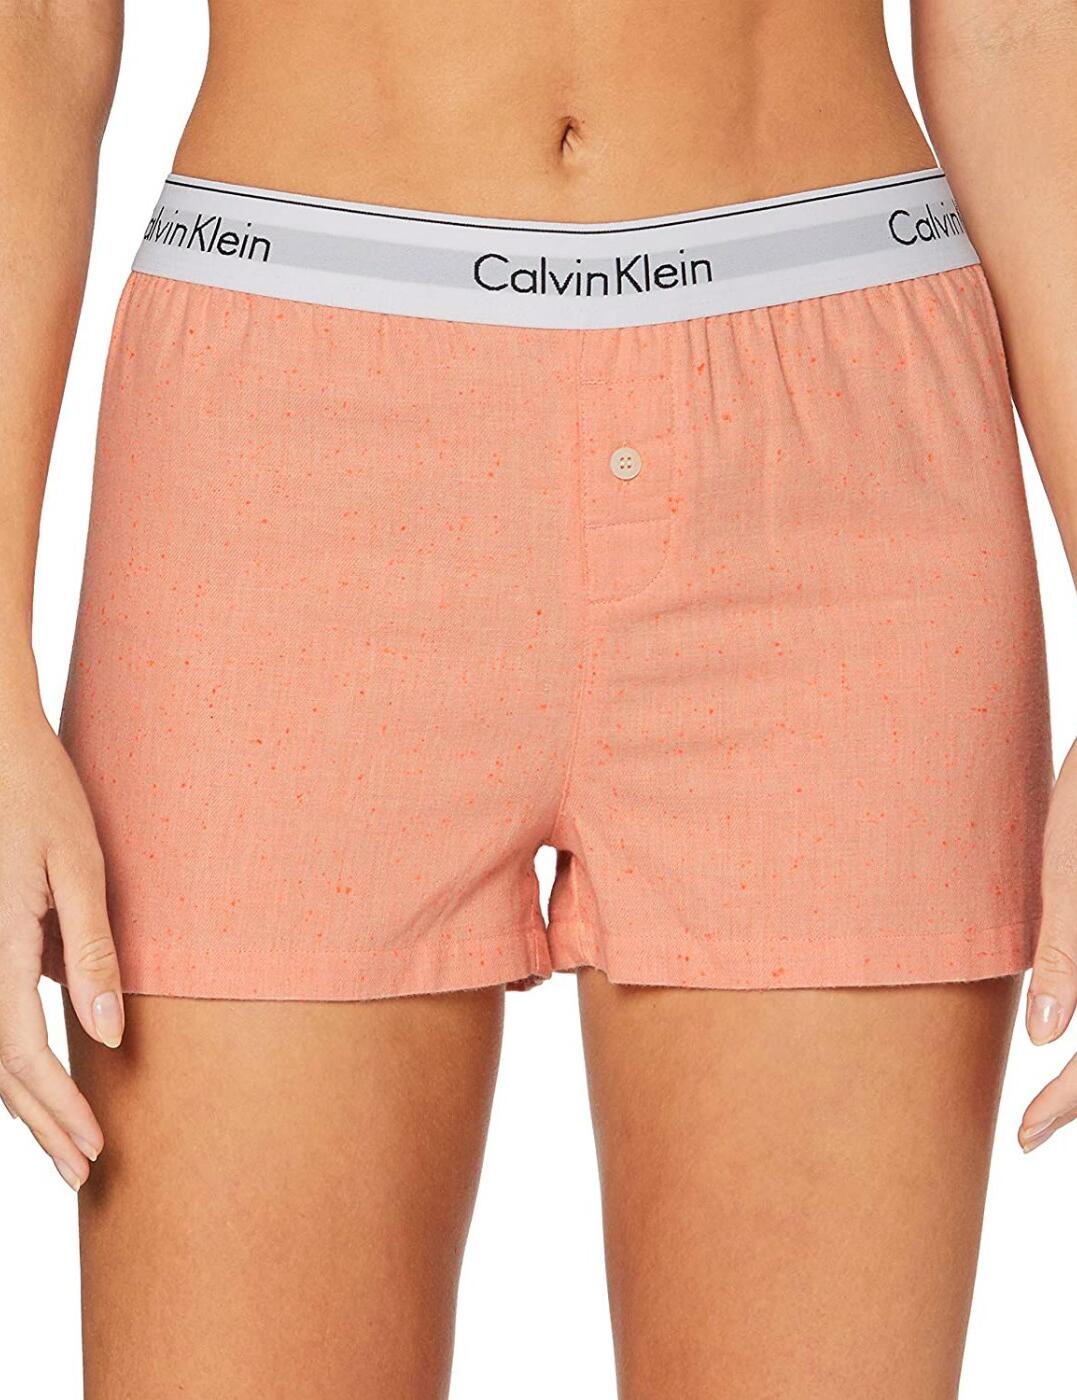 Шорты calvin klein. Шорты Calvin Klein женские. Розовые шорты Calvin Klein женские. Шорты Calvin Klein детские.